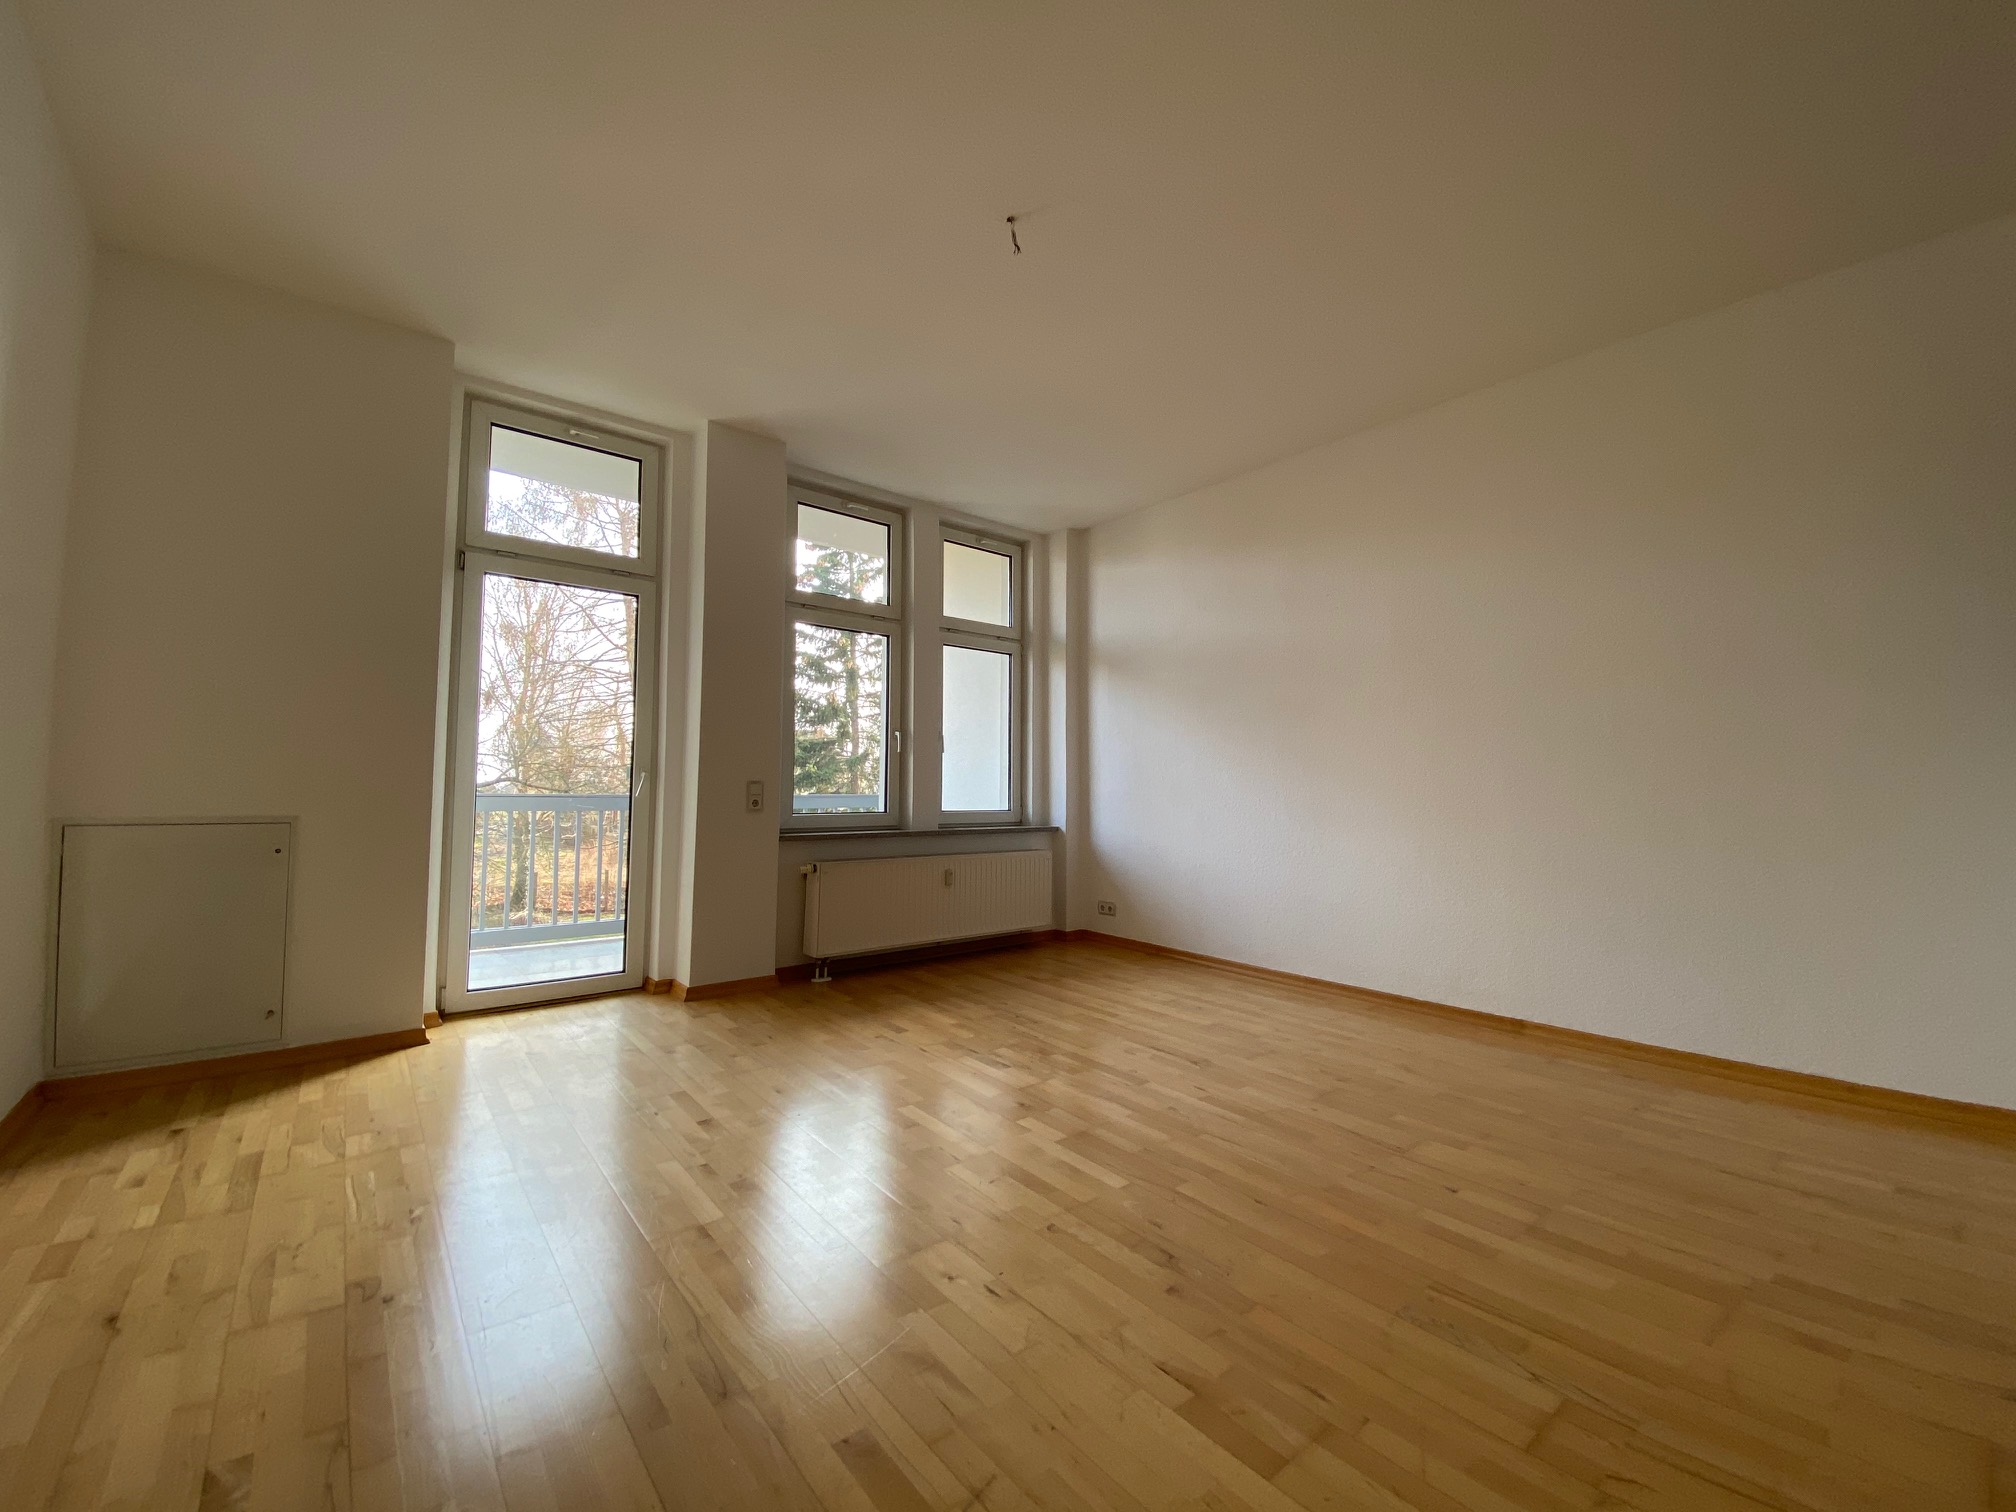 Mietwohnung: Vermietung von 3-Raum-Wohnung in Görlitz, Biesnitzer Straße 16